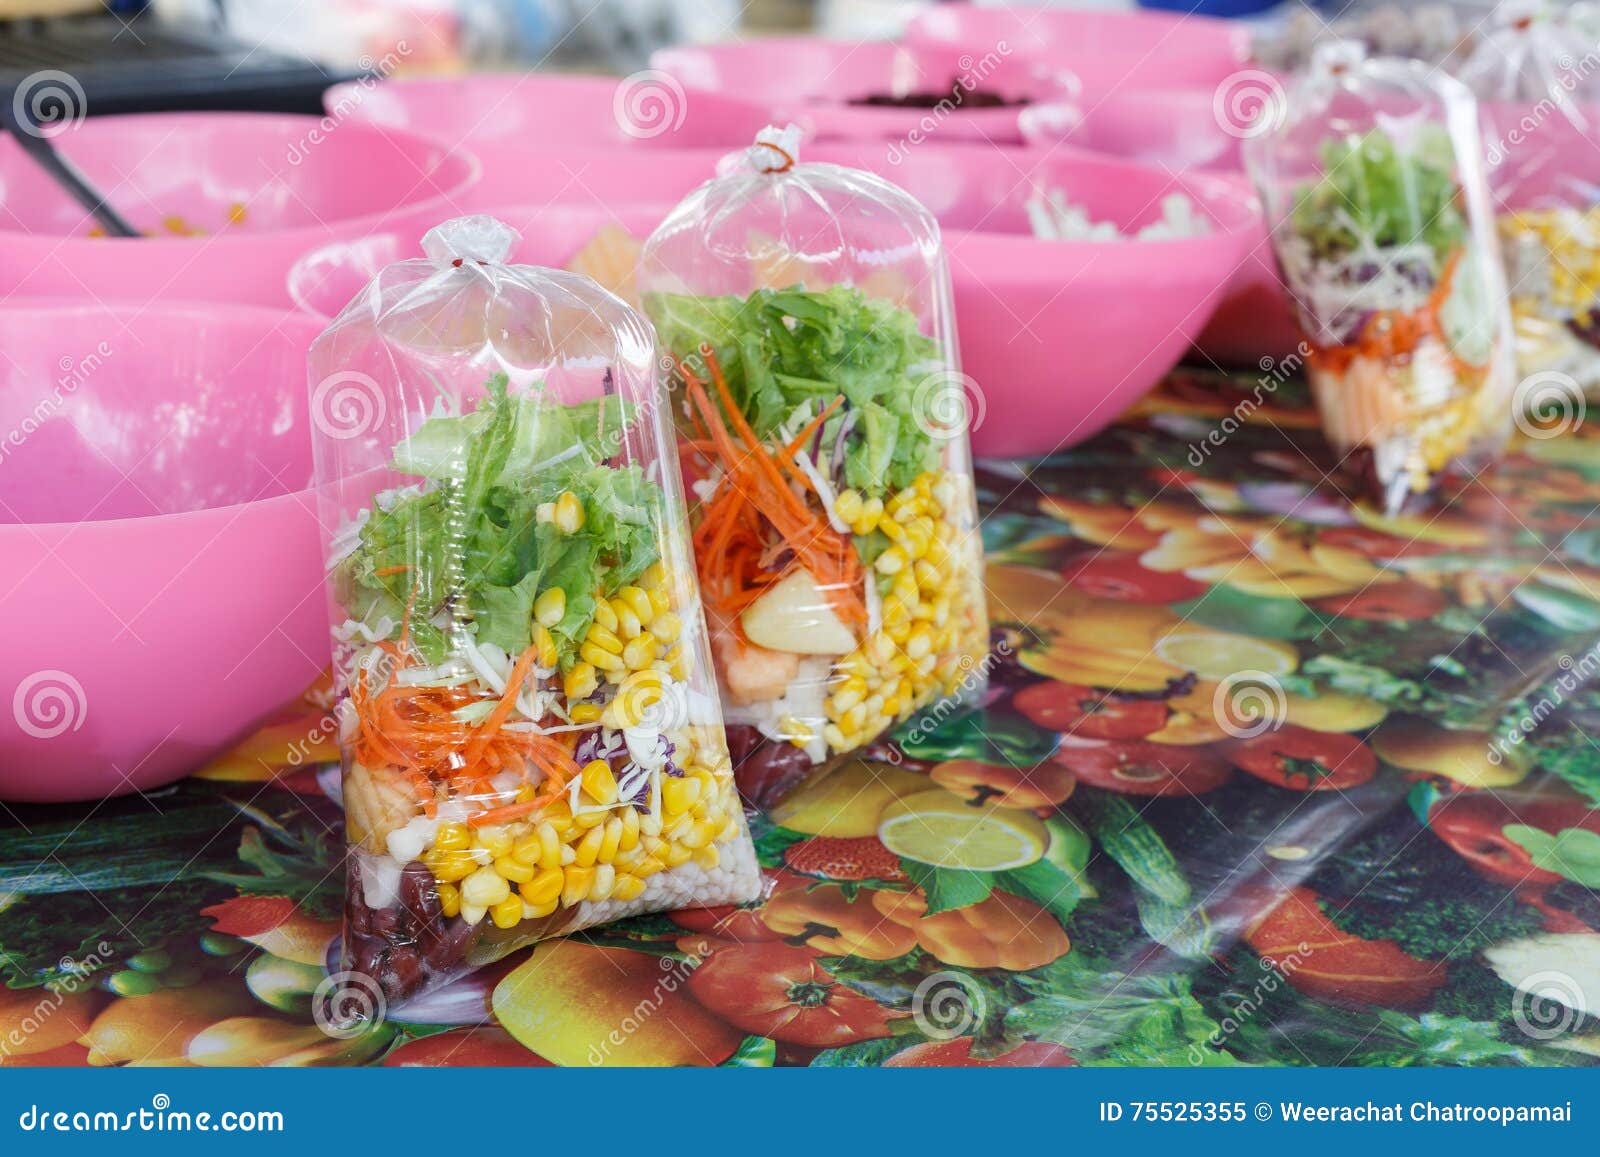 Delegación gatito dueño Bufete De Ensaladas En Una Bolsa De Plástico Imagen de archivo - Imagen de  comida, cubo: 75525355